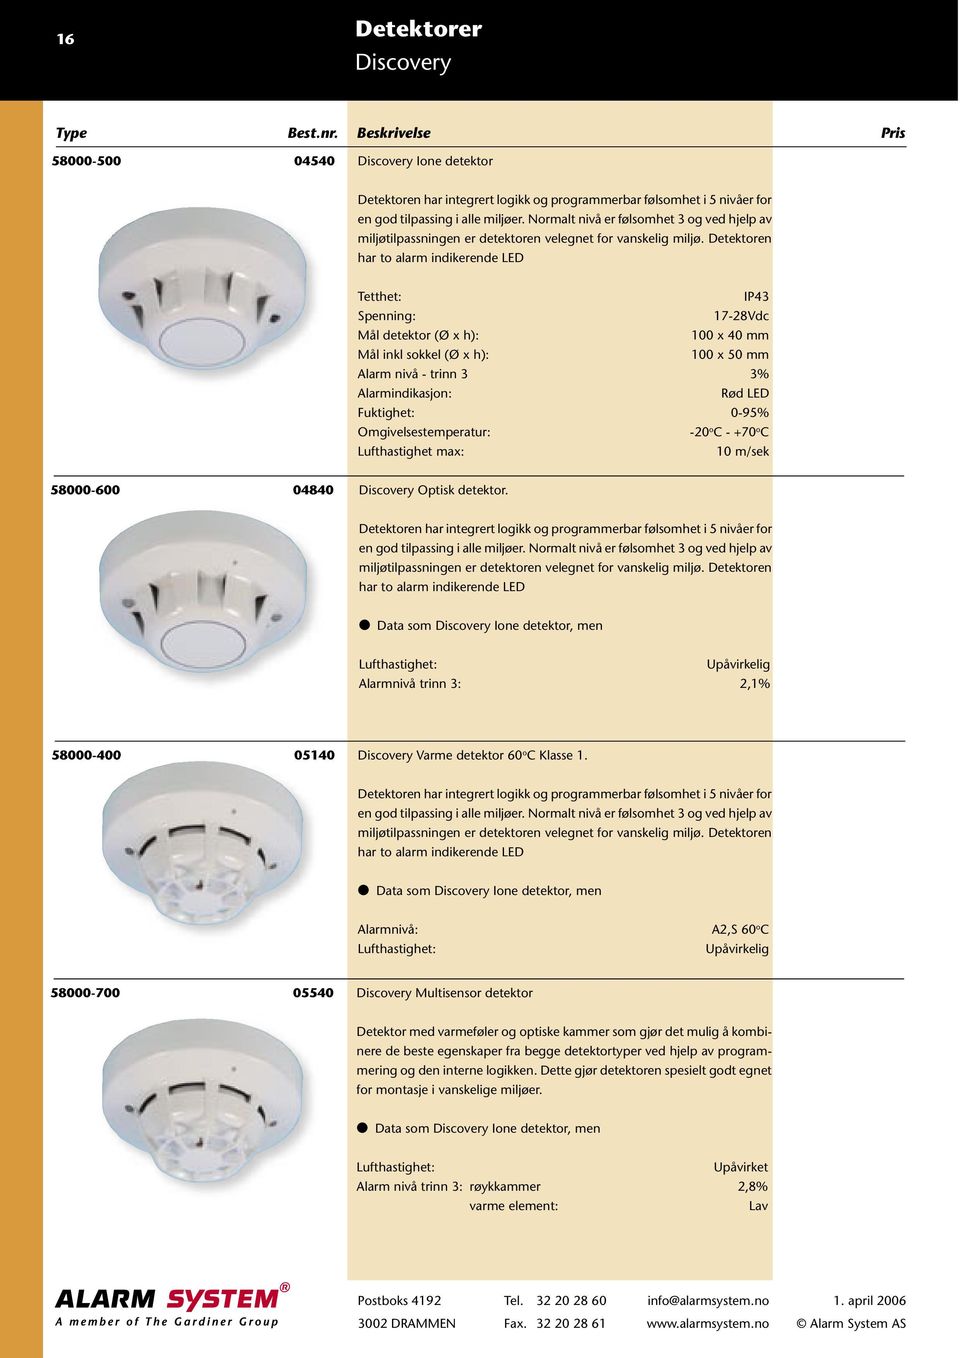 Detektoren har to alarm indikerende LED Tetthet: IP43 17-28Vdc Mål detektor (Ø x h): 100 x 40 mm Mål inkl sokkel (Ø x h): 100 x 50 mm Alarm nivå - trinn 3 3% Alarmindikasjon: Rød LED Fuktighet: 0-95%